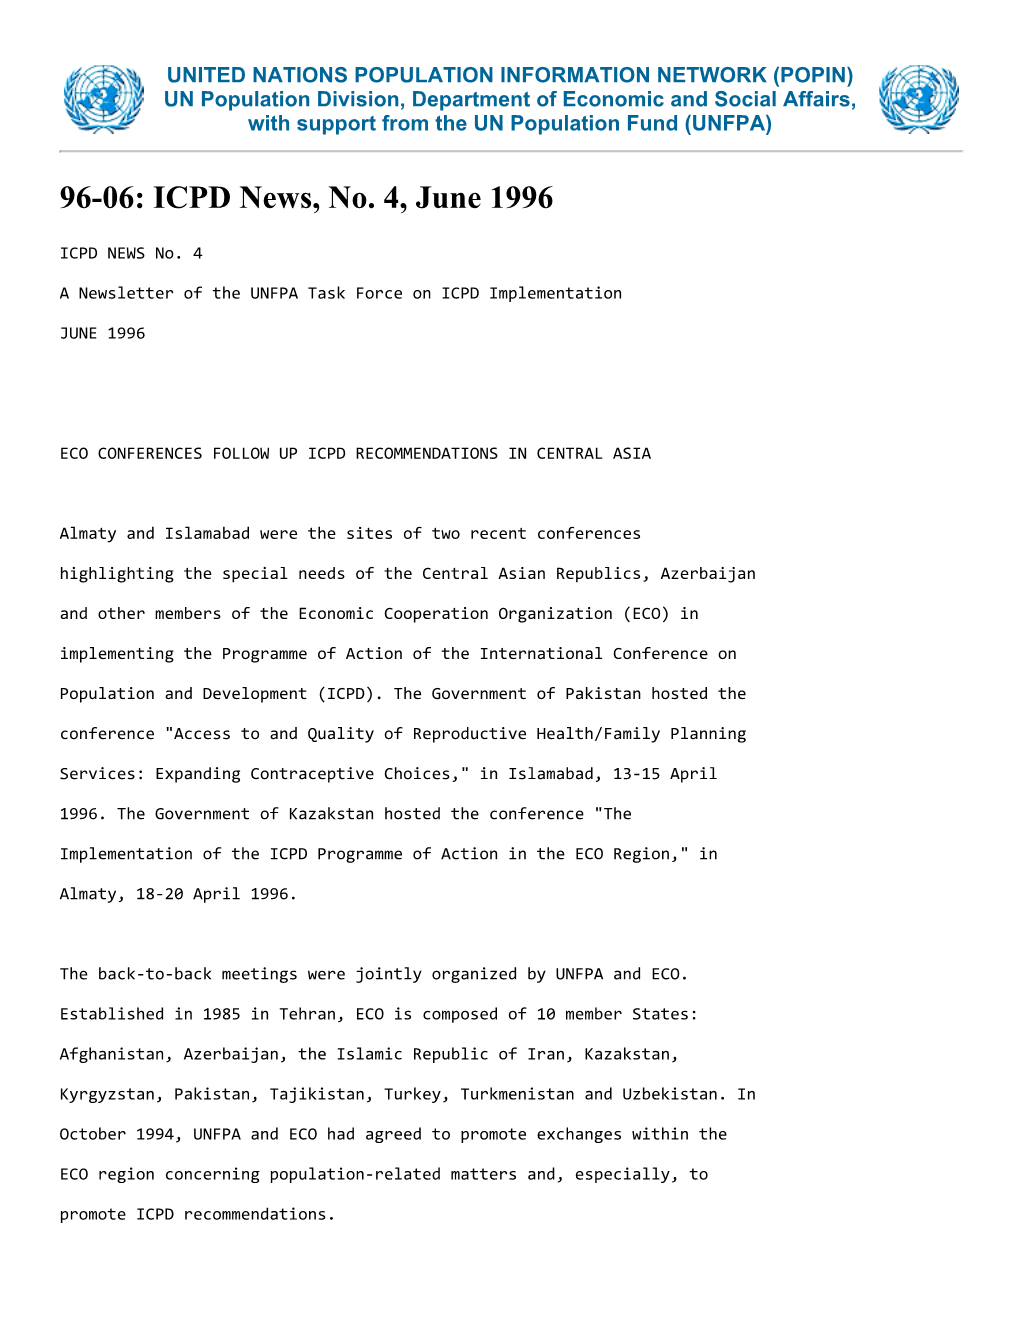 ICPD News, No. 4, June 1996